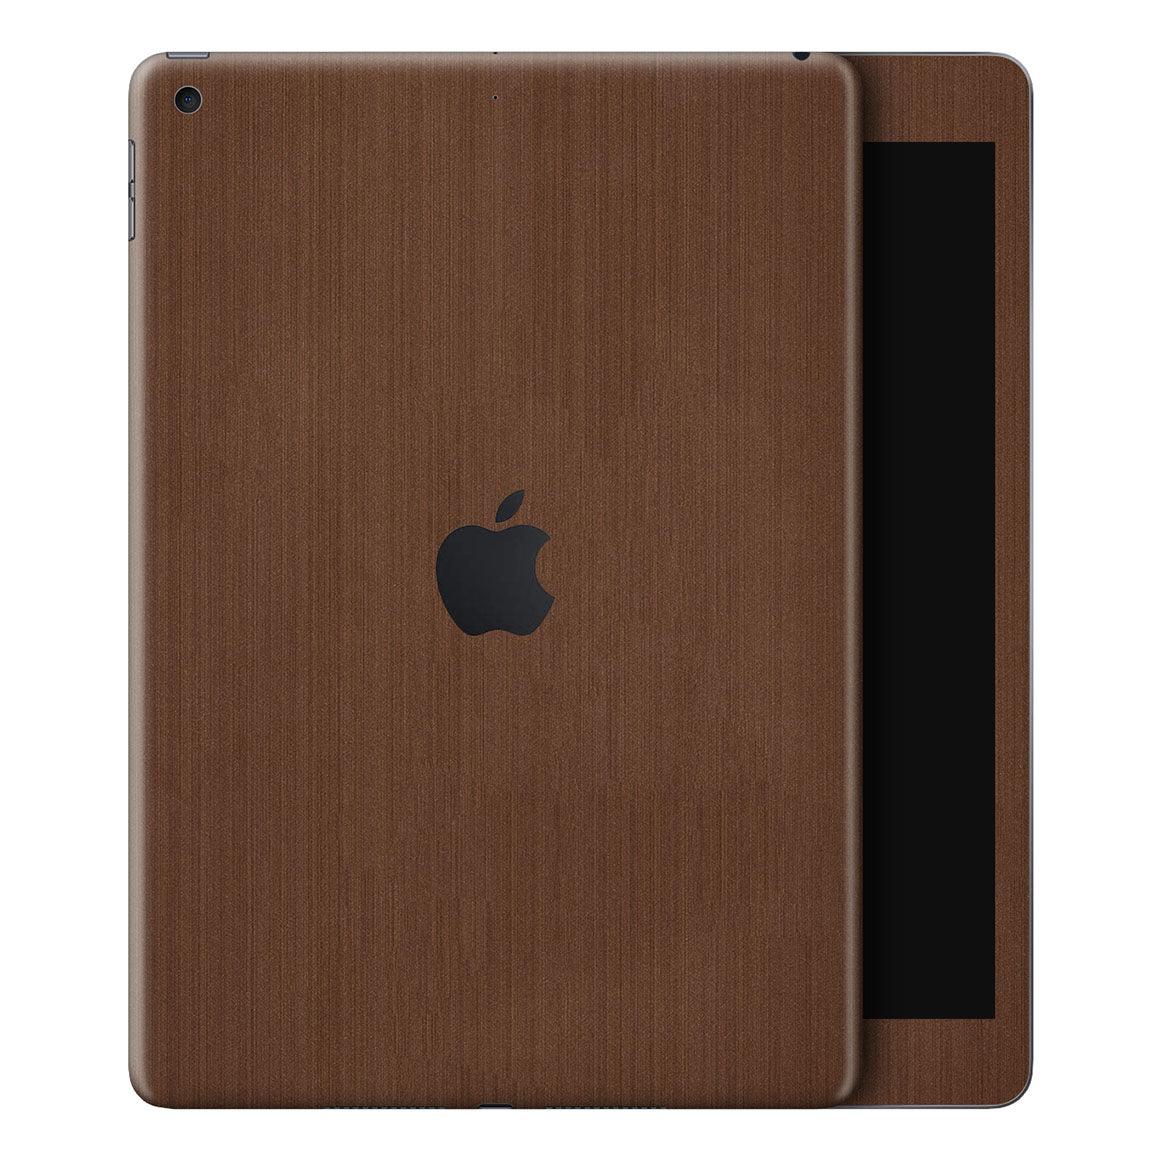 ipad air smart case brown